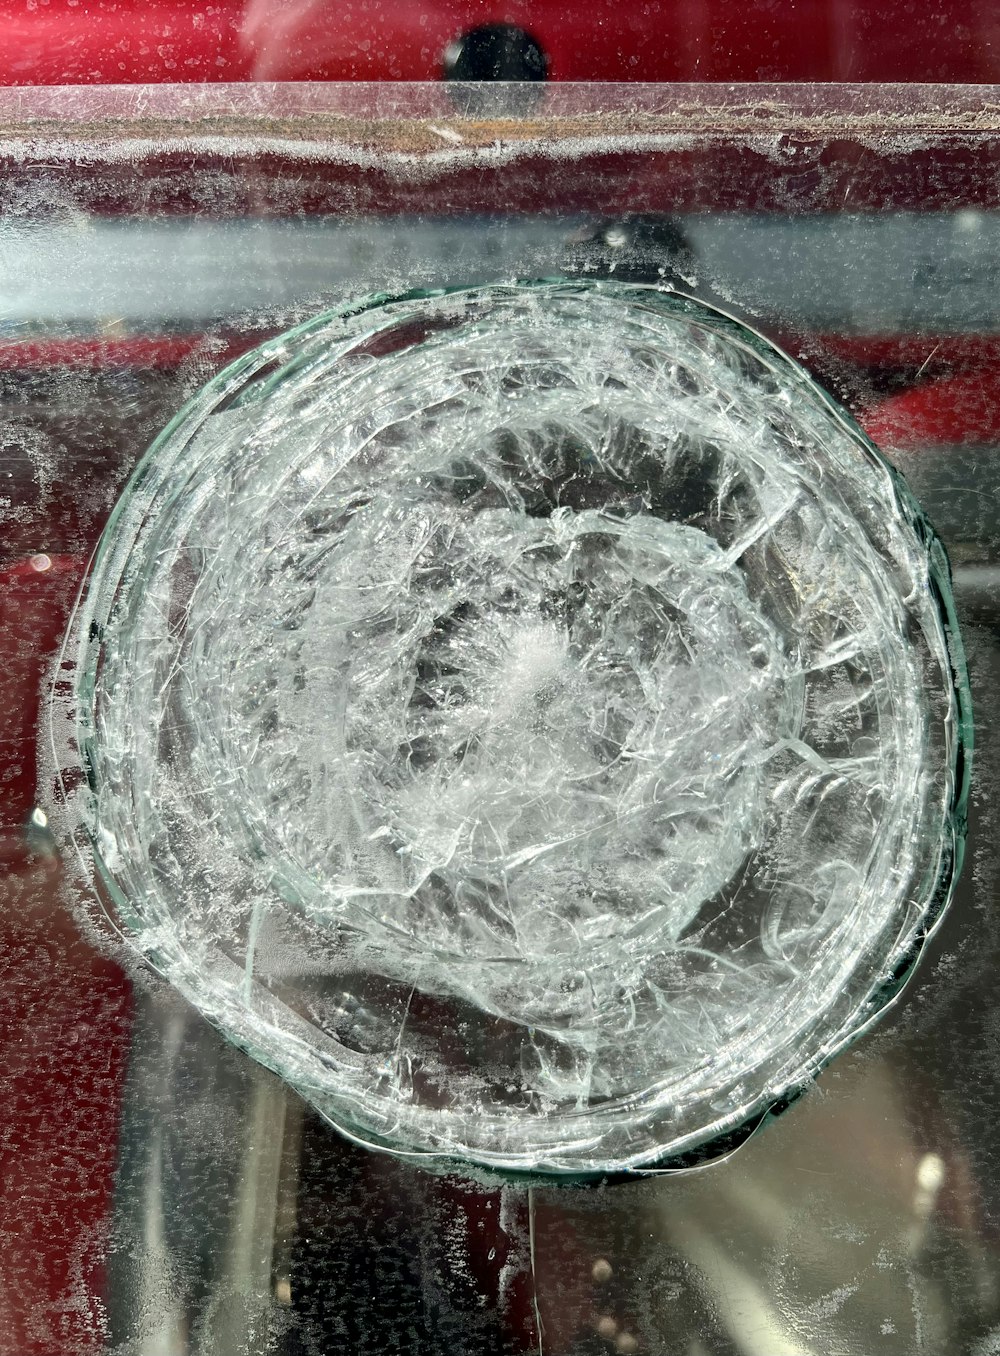 Un primer plano de un recipiente de vidrio sobre una mesa